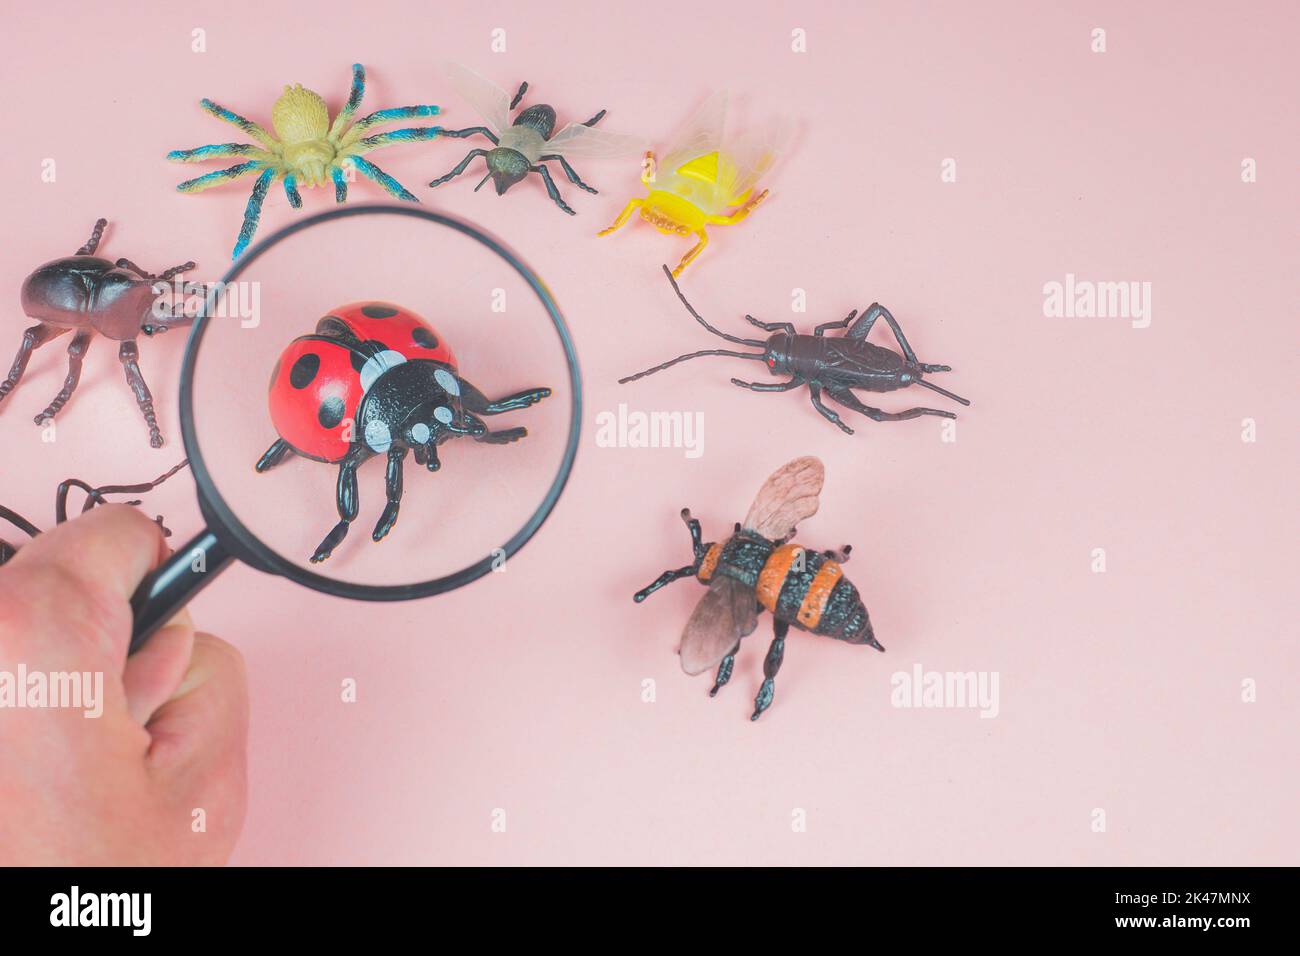 Il bambino che esplora i piccoli insetti del giocattolo con una lente d'ingrandimento. Lente d'ingrandimento in mano per zoomare la coccinella. Sfondo rosa con insetti, parassiti, insetti giocattoli. Foto Stock